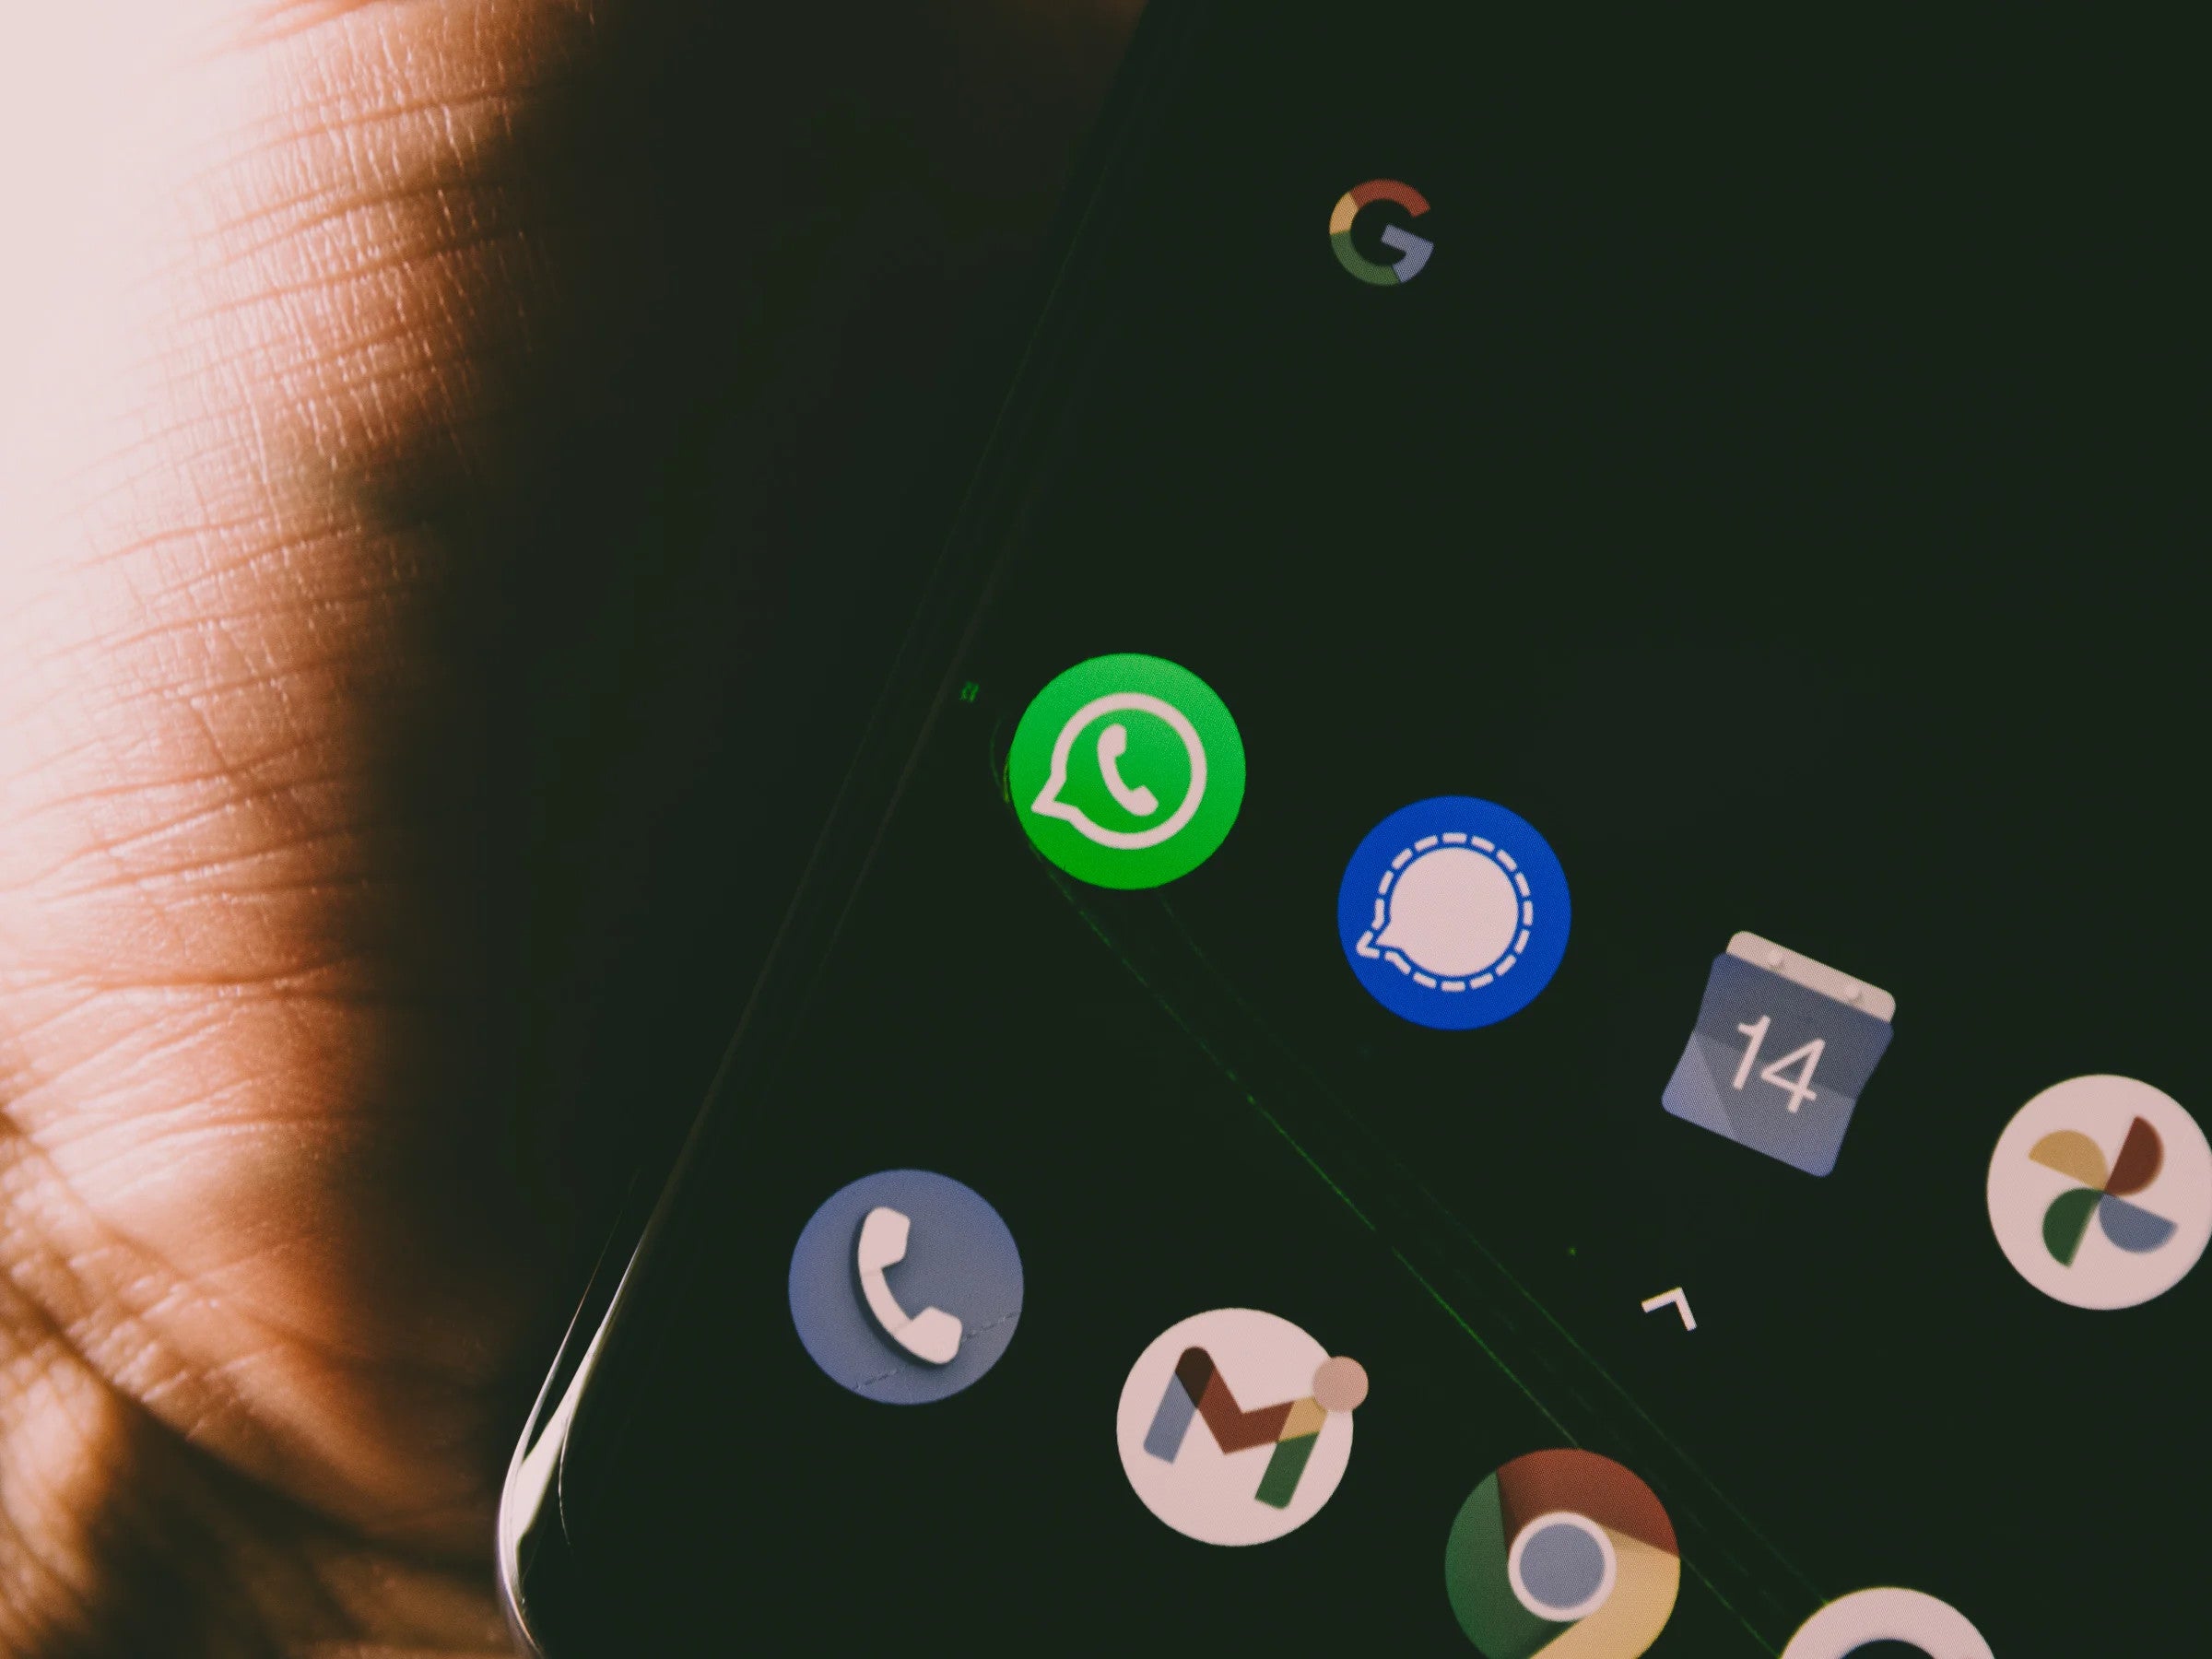 #Signal kopiert WhatsApp – was das jetzt für Nutzer bedeutet